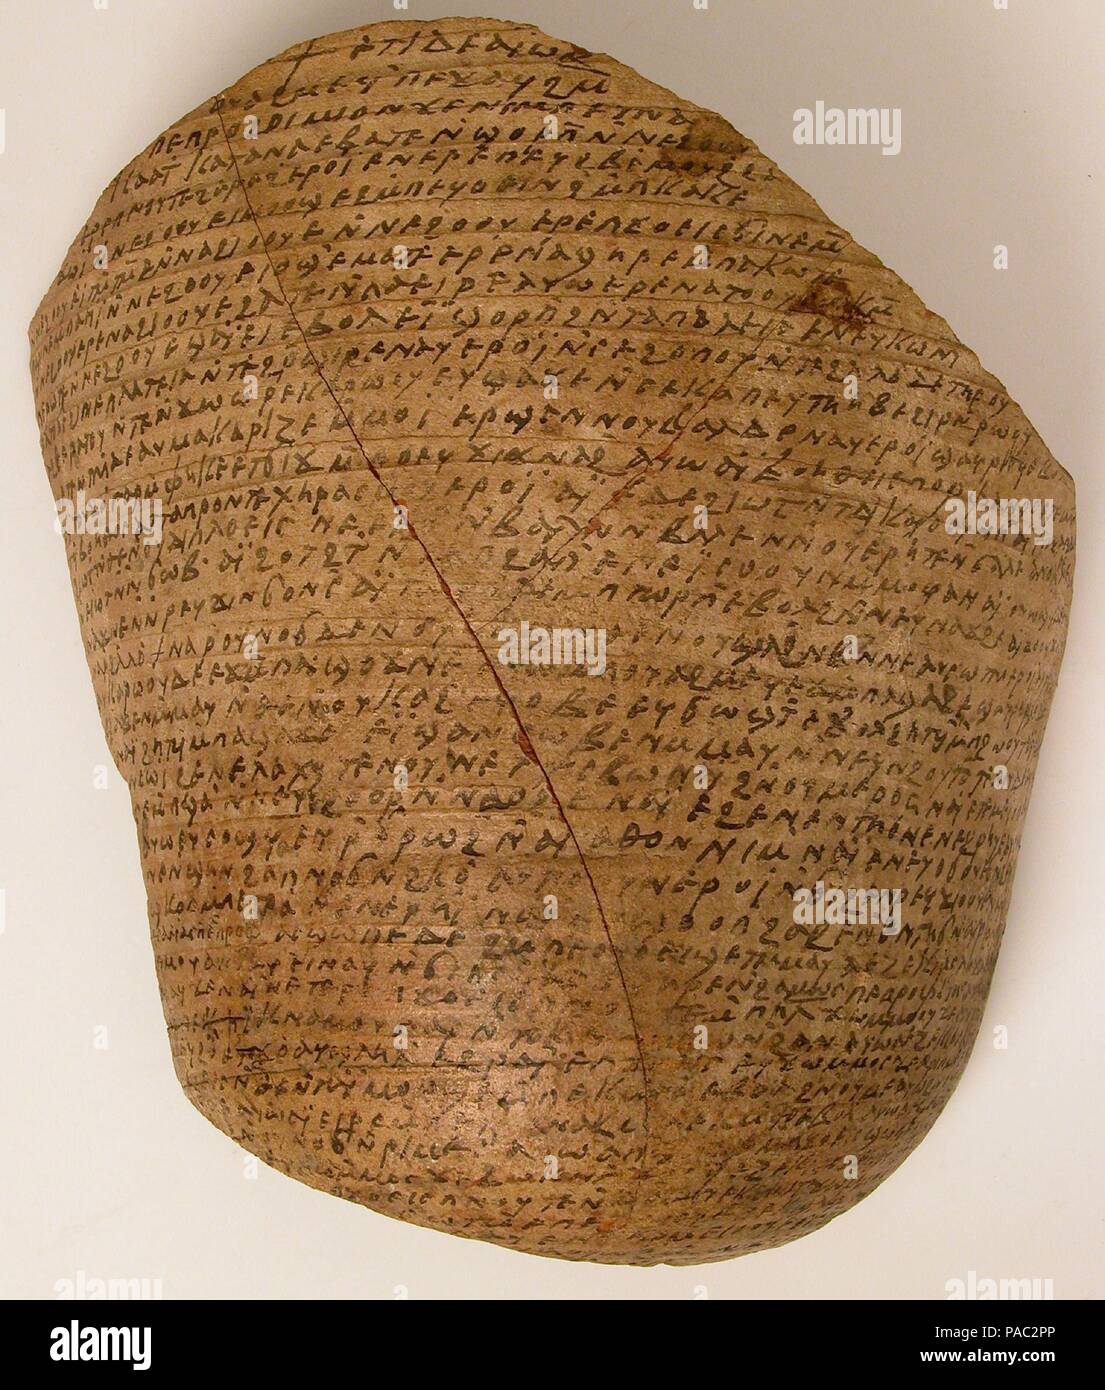 Ostrakon avec des textes de la Bible. Culture : le copte. Dimensions : 10 1/4 x 9 1/16 x 3 9/16 in. (26 × 23 × 9,1 cm). Date : 580-640. Ostraco sont des textes écrits sur les poteries brisées, qui étaient à l'emploi lorsque le parchemin n'était pas disponible ou trop cher. Épiphane à un grand nombre d'ostraca ont été découvertes dans le monastère, y compris dans son tas de détritus ; ils enregistrent des versets bibliques, des documents juridiques, des sermons, les comptes financiers, les manuels scolaires, et des lettres demandant de l'aide et de prières. Certains révèlent que, même à la frontière la plus au sud de l'Empire, les gens étaient toujours au courant des événements dans la capitale, Banque D'Images